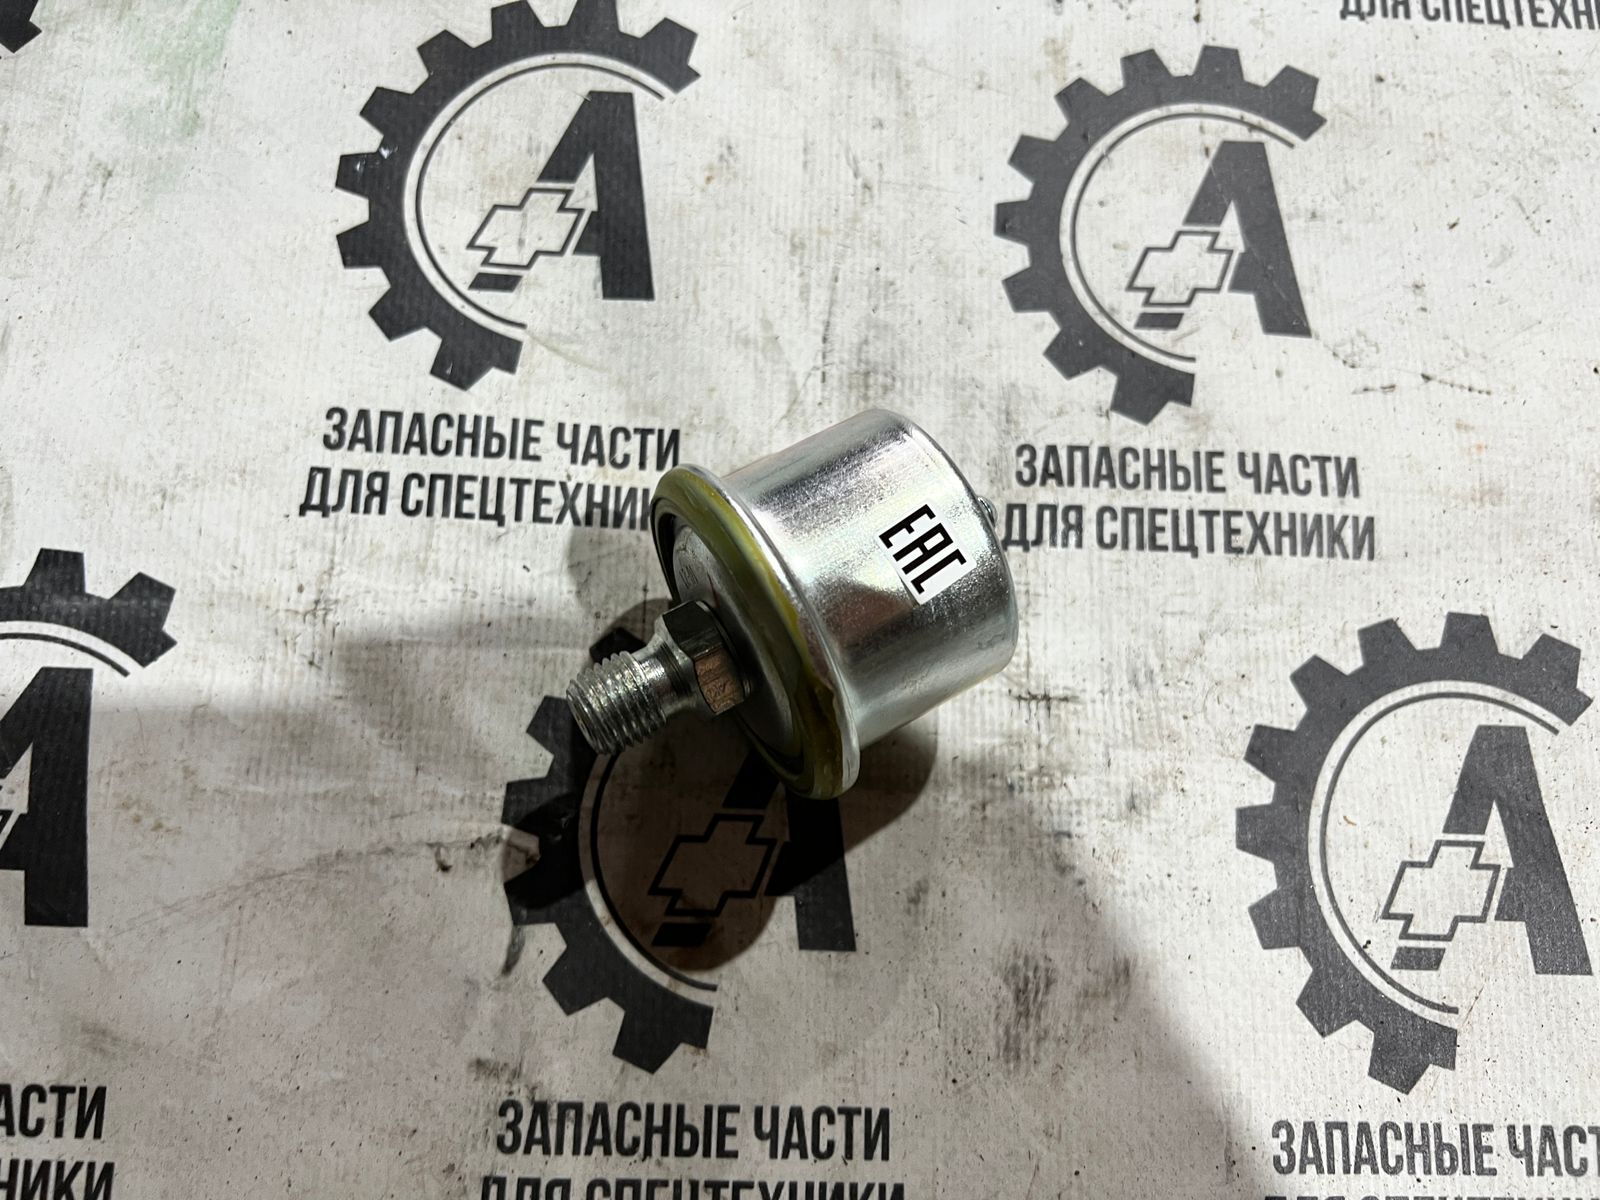 Датчик указателя давления масла ММ358 52-04-3840600 на гусеничный вездеход ГАЗ-71